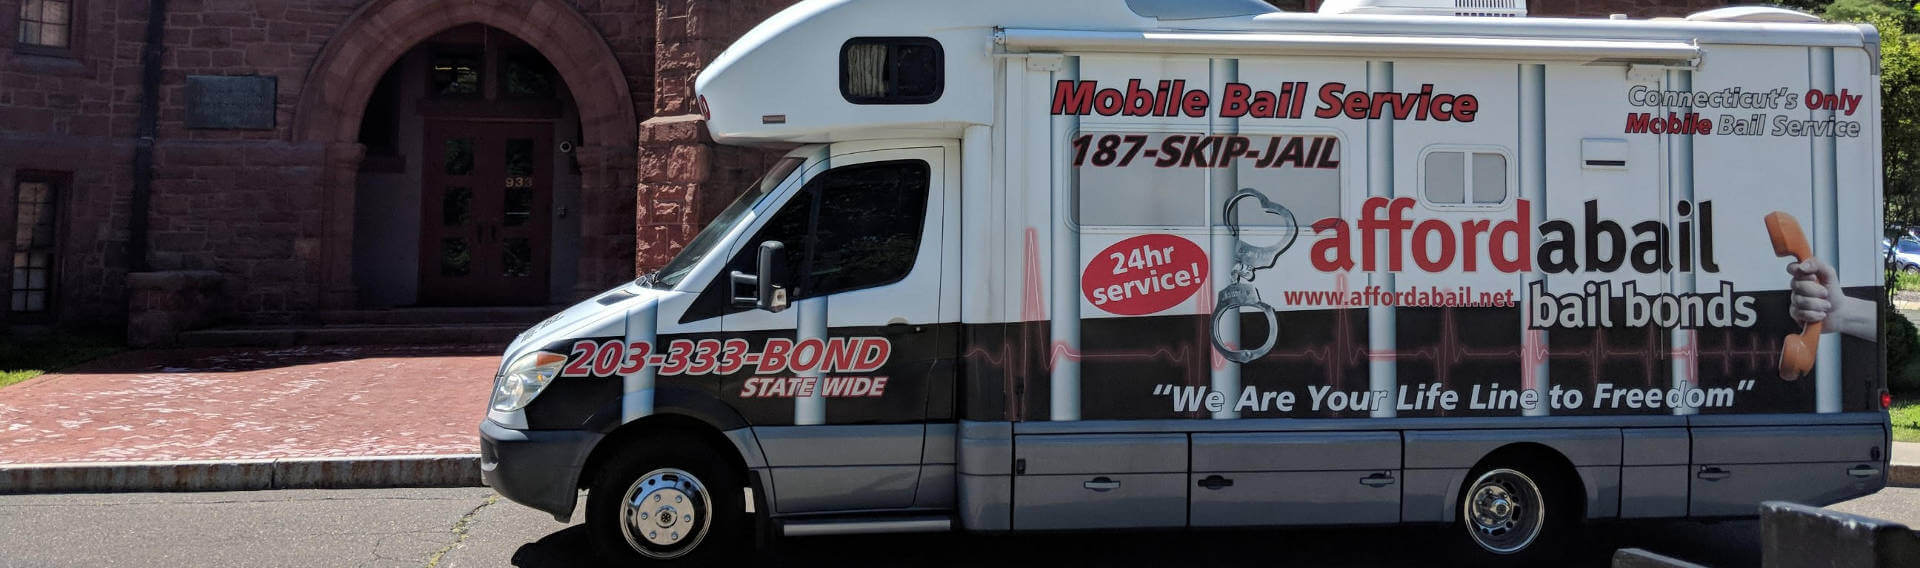 Mobile bail bonds service in Bristol CT